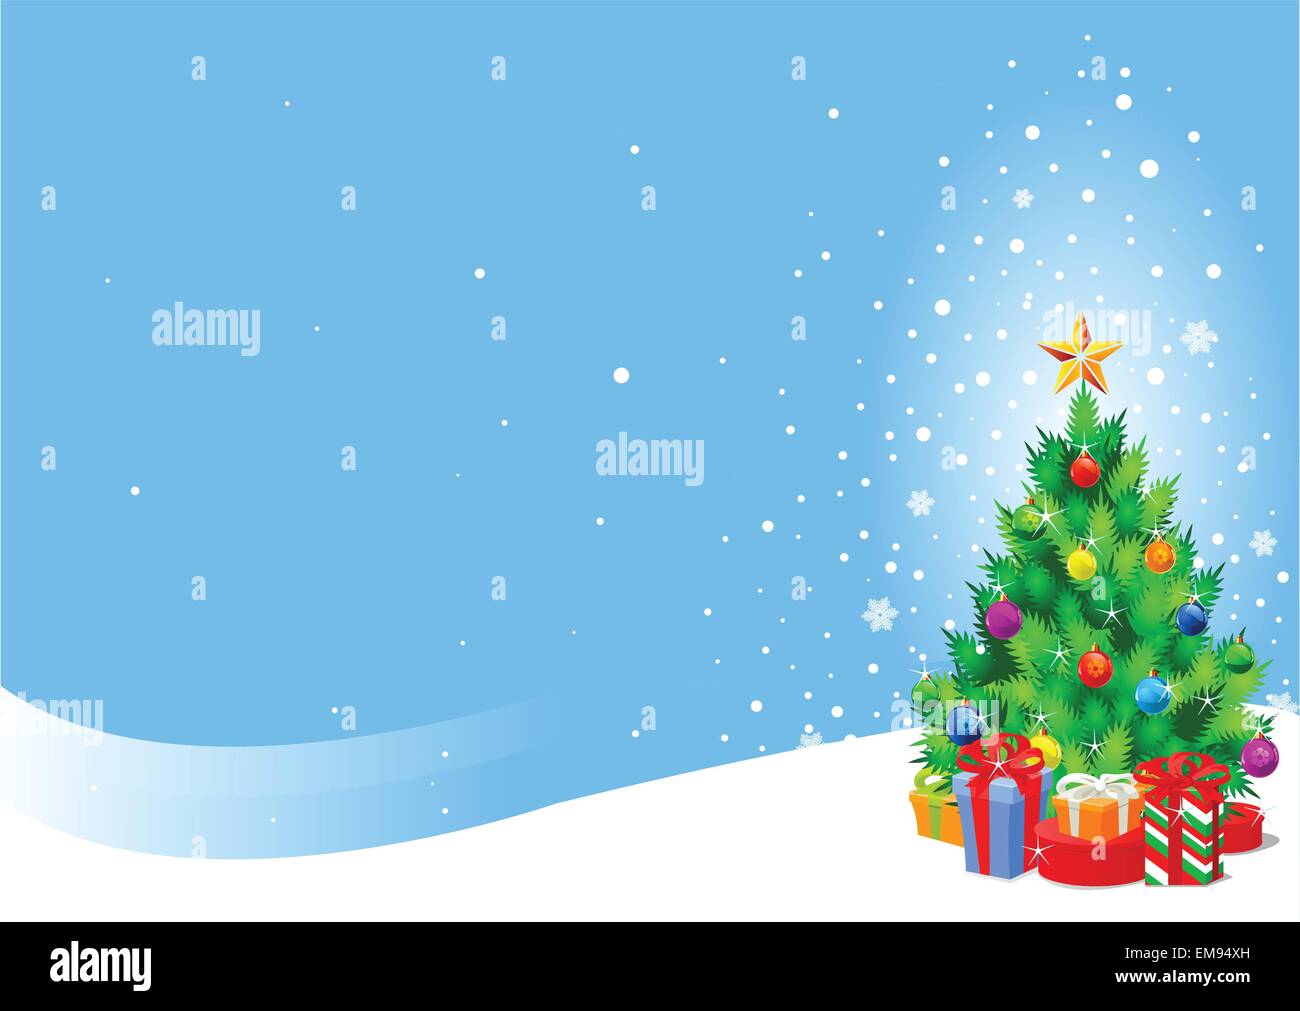 Weihnachtsbaum-Hintergrund Stock Vektor